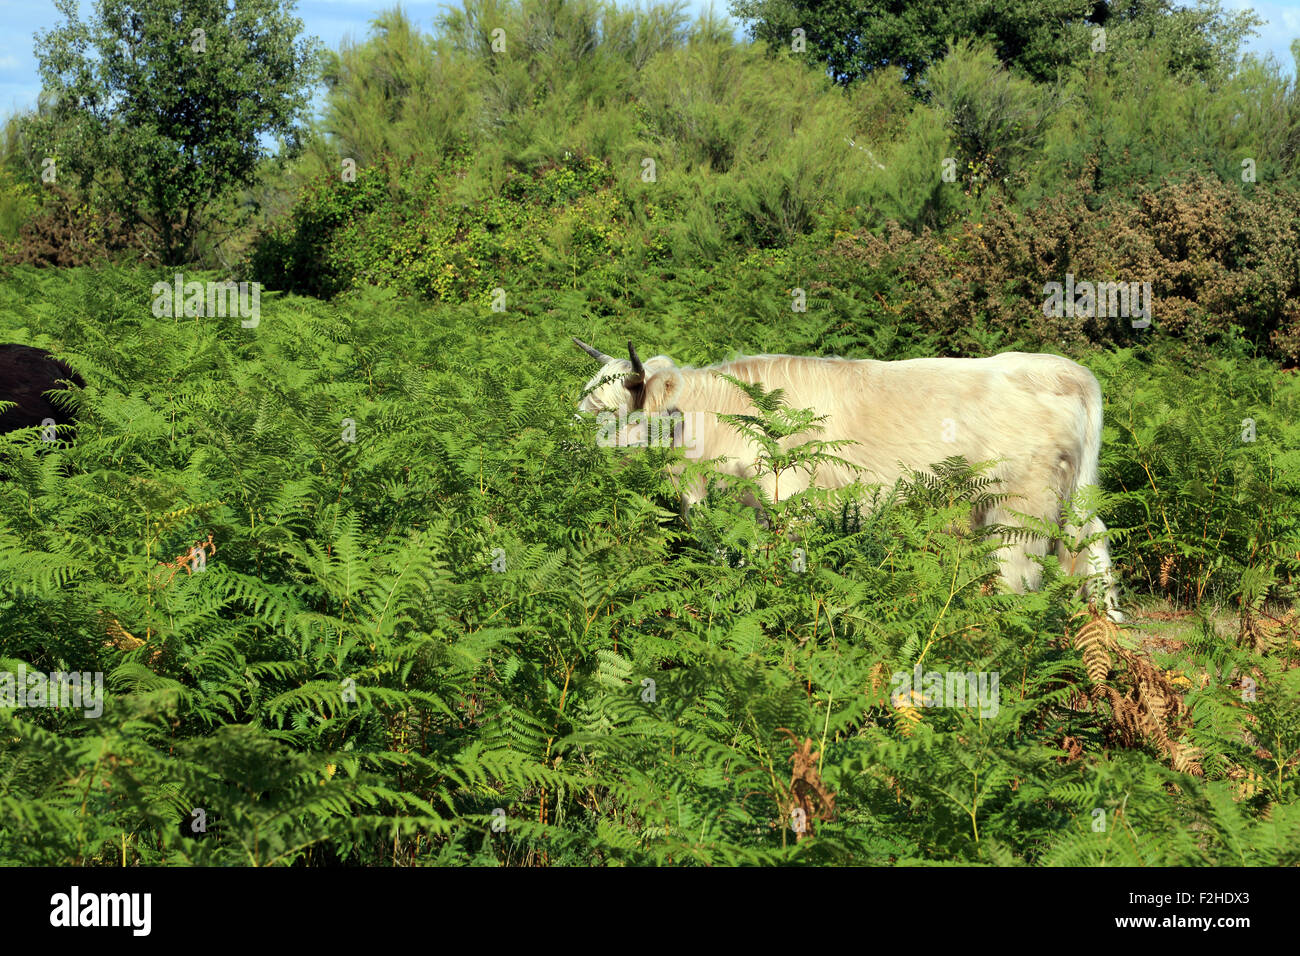 Cow in bracken at Pointe de Pen Bron, Guerande, Loire-Atlantique, France Stock Photo